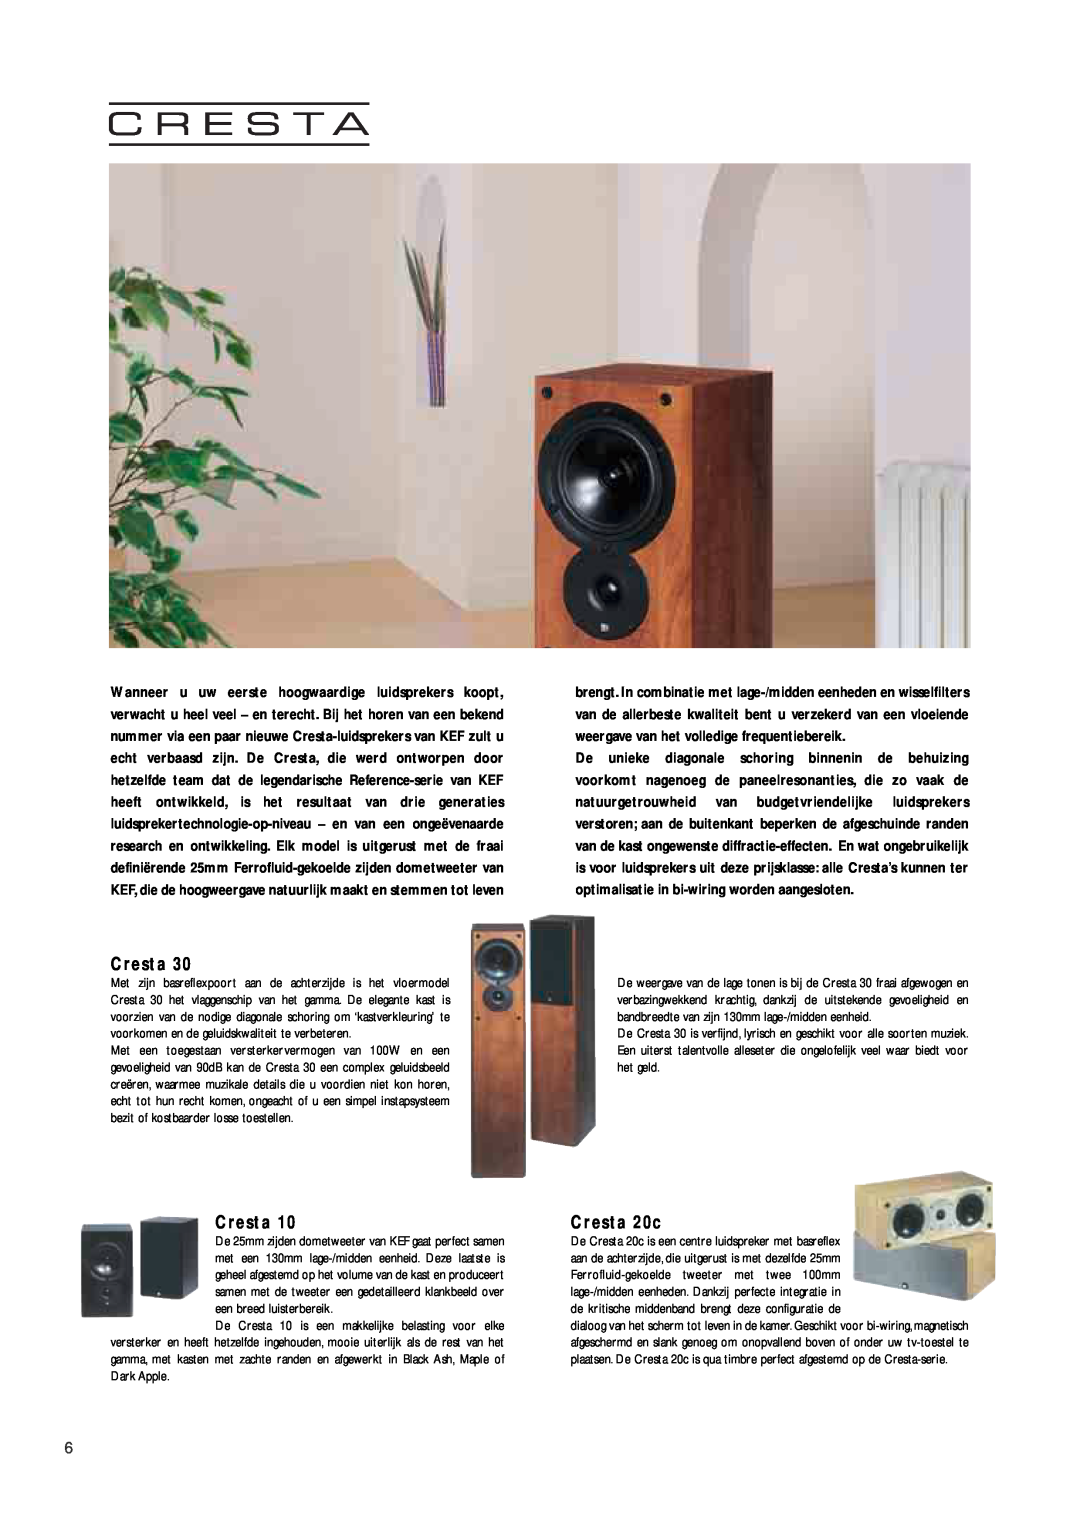 KEF Audio FLC 2003 manual Cresta 20c 